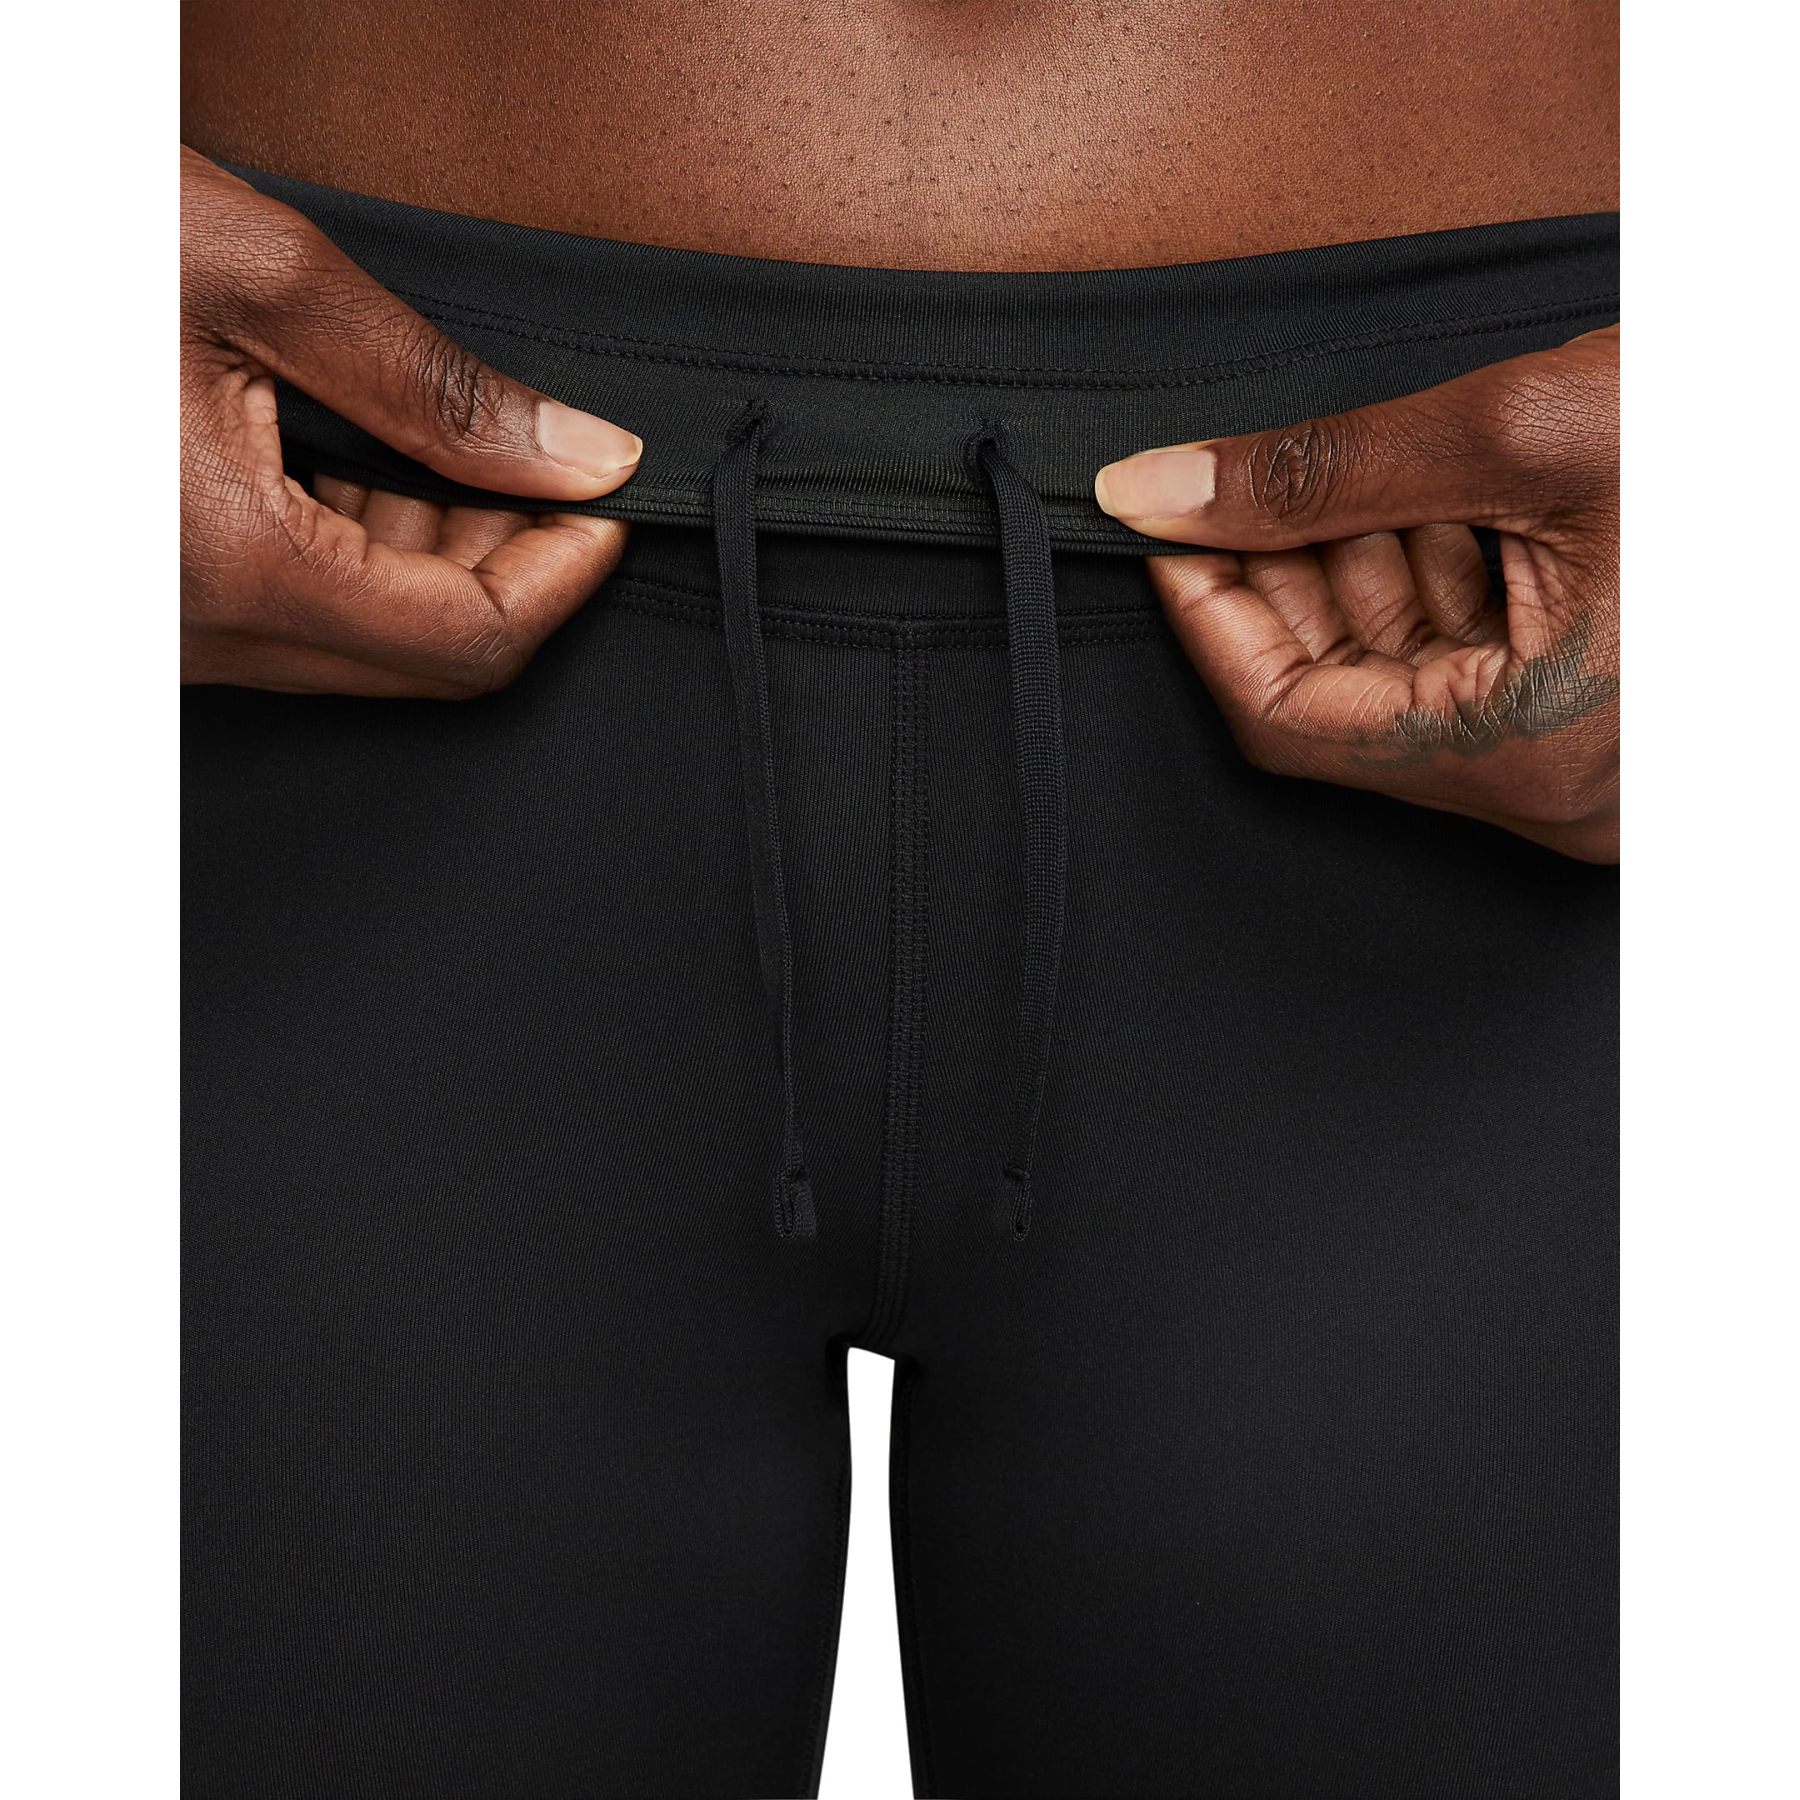 Nike Running Dri-FIT Air 7/8 leggings in black